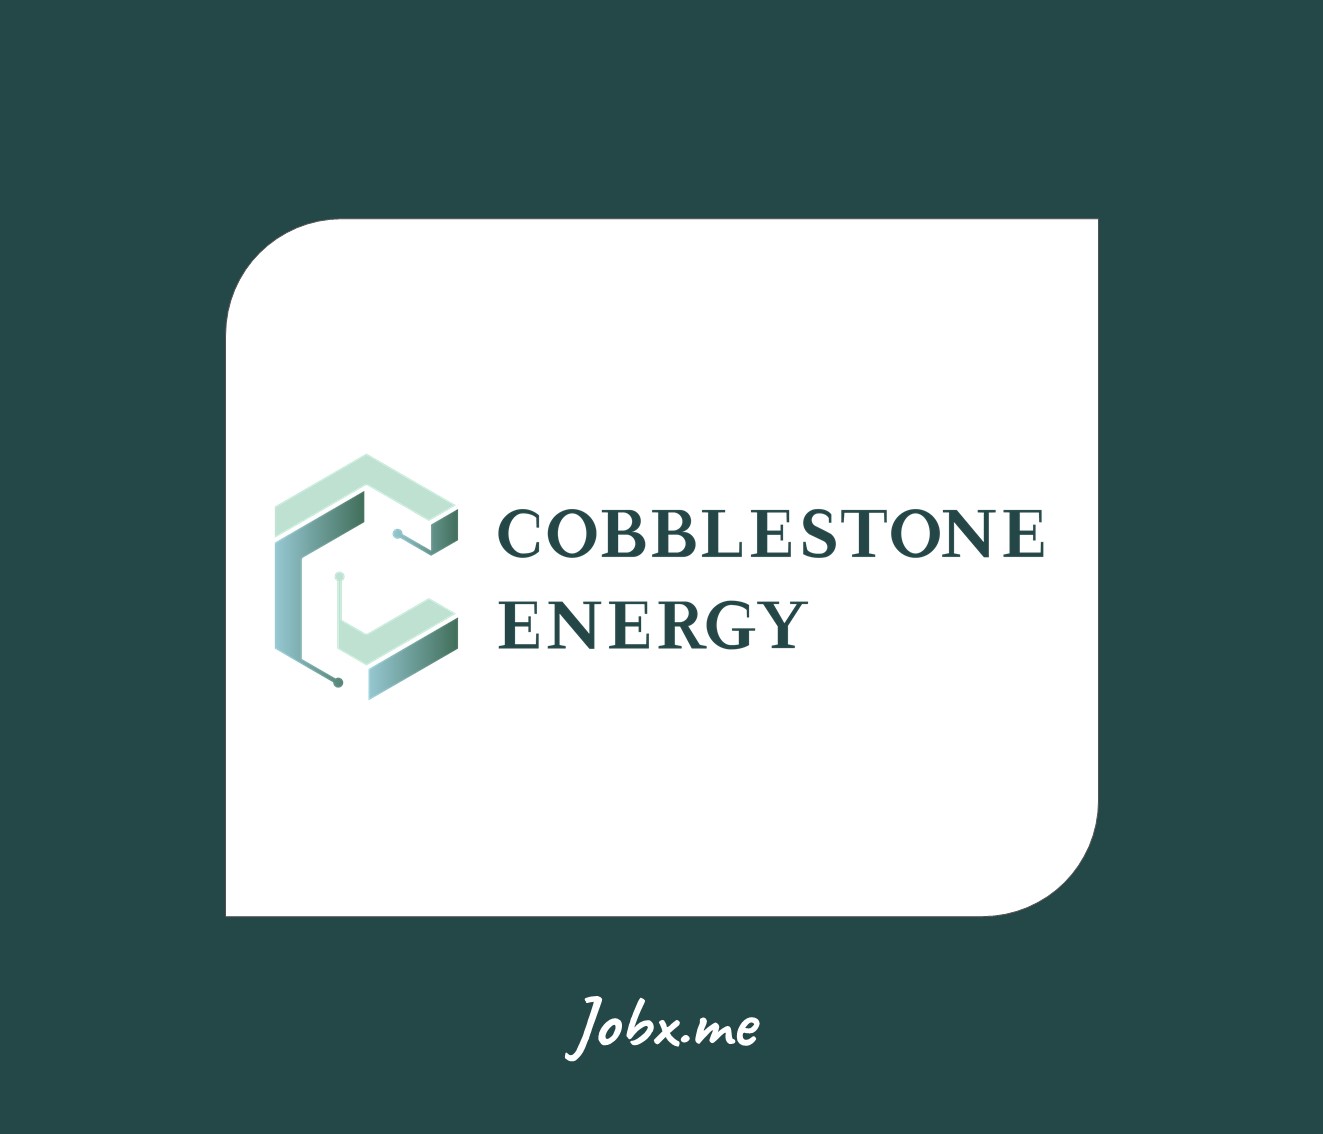 Cobblestone Energy Jobs